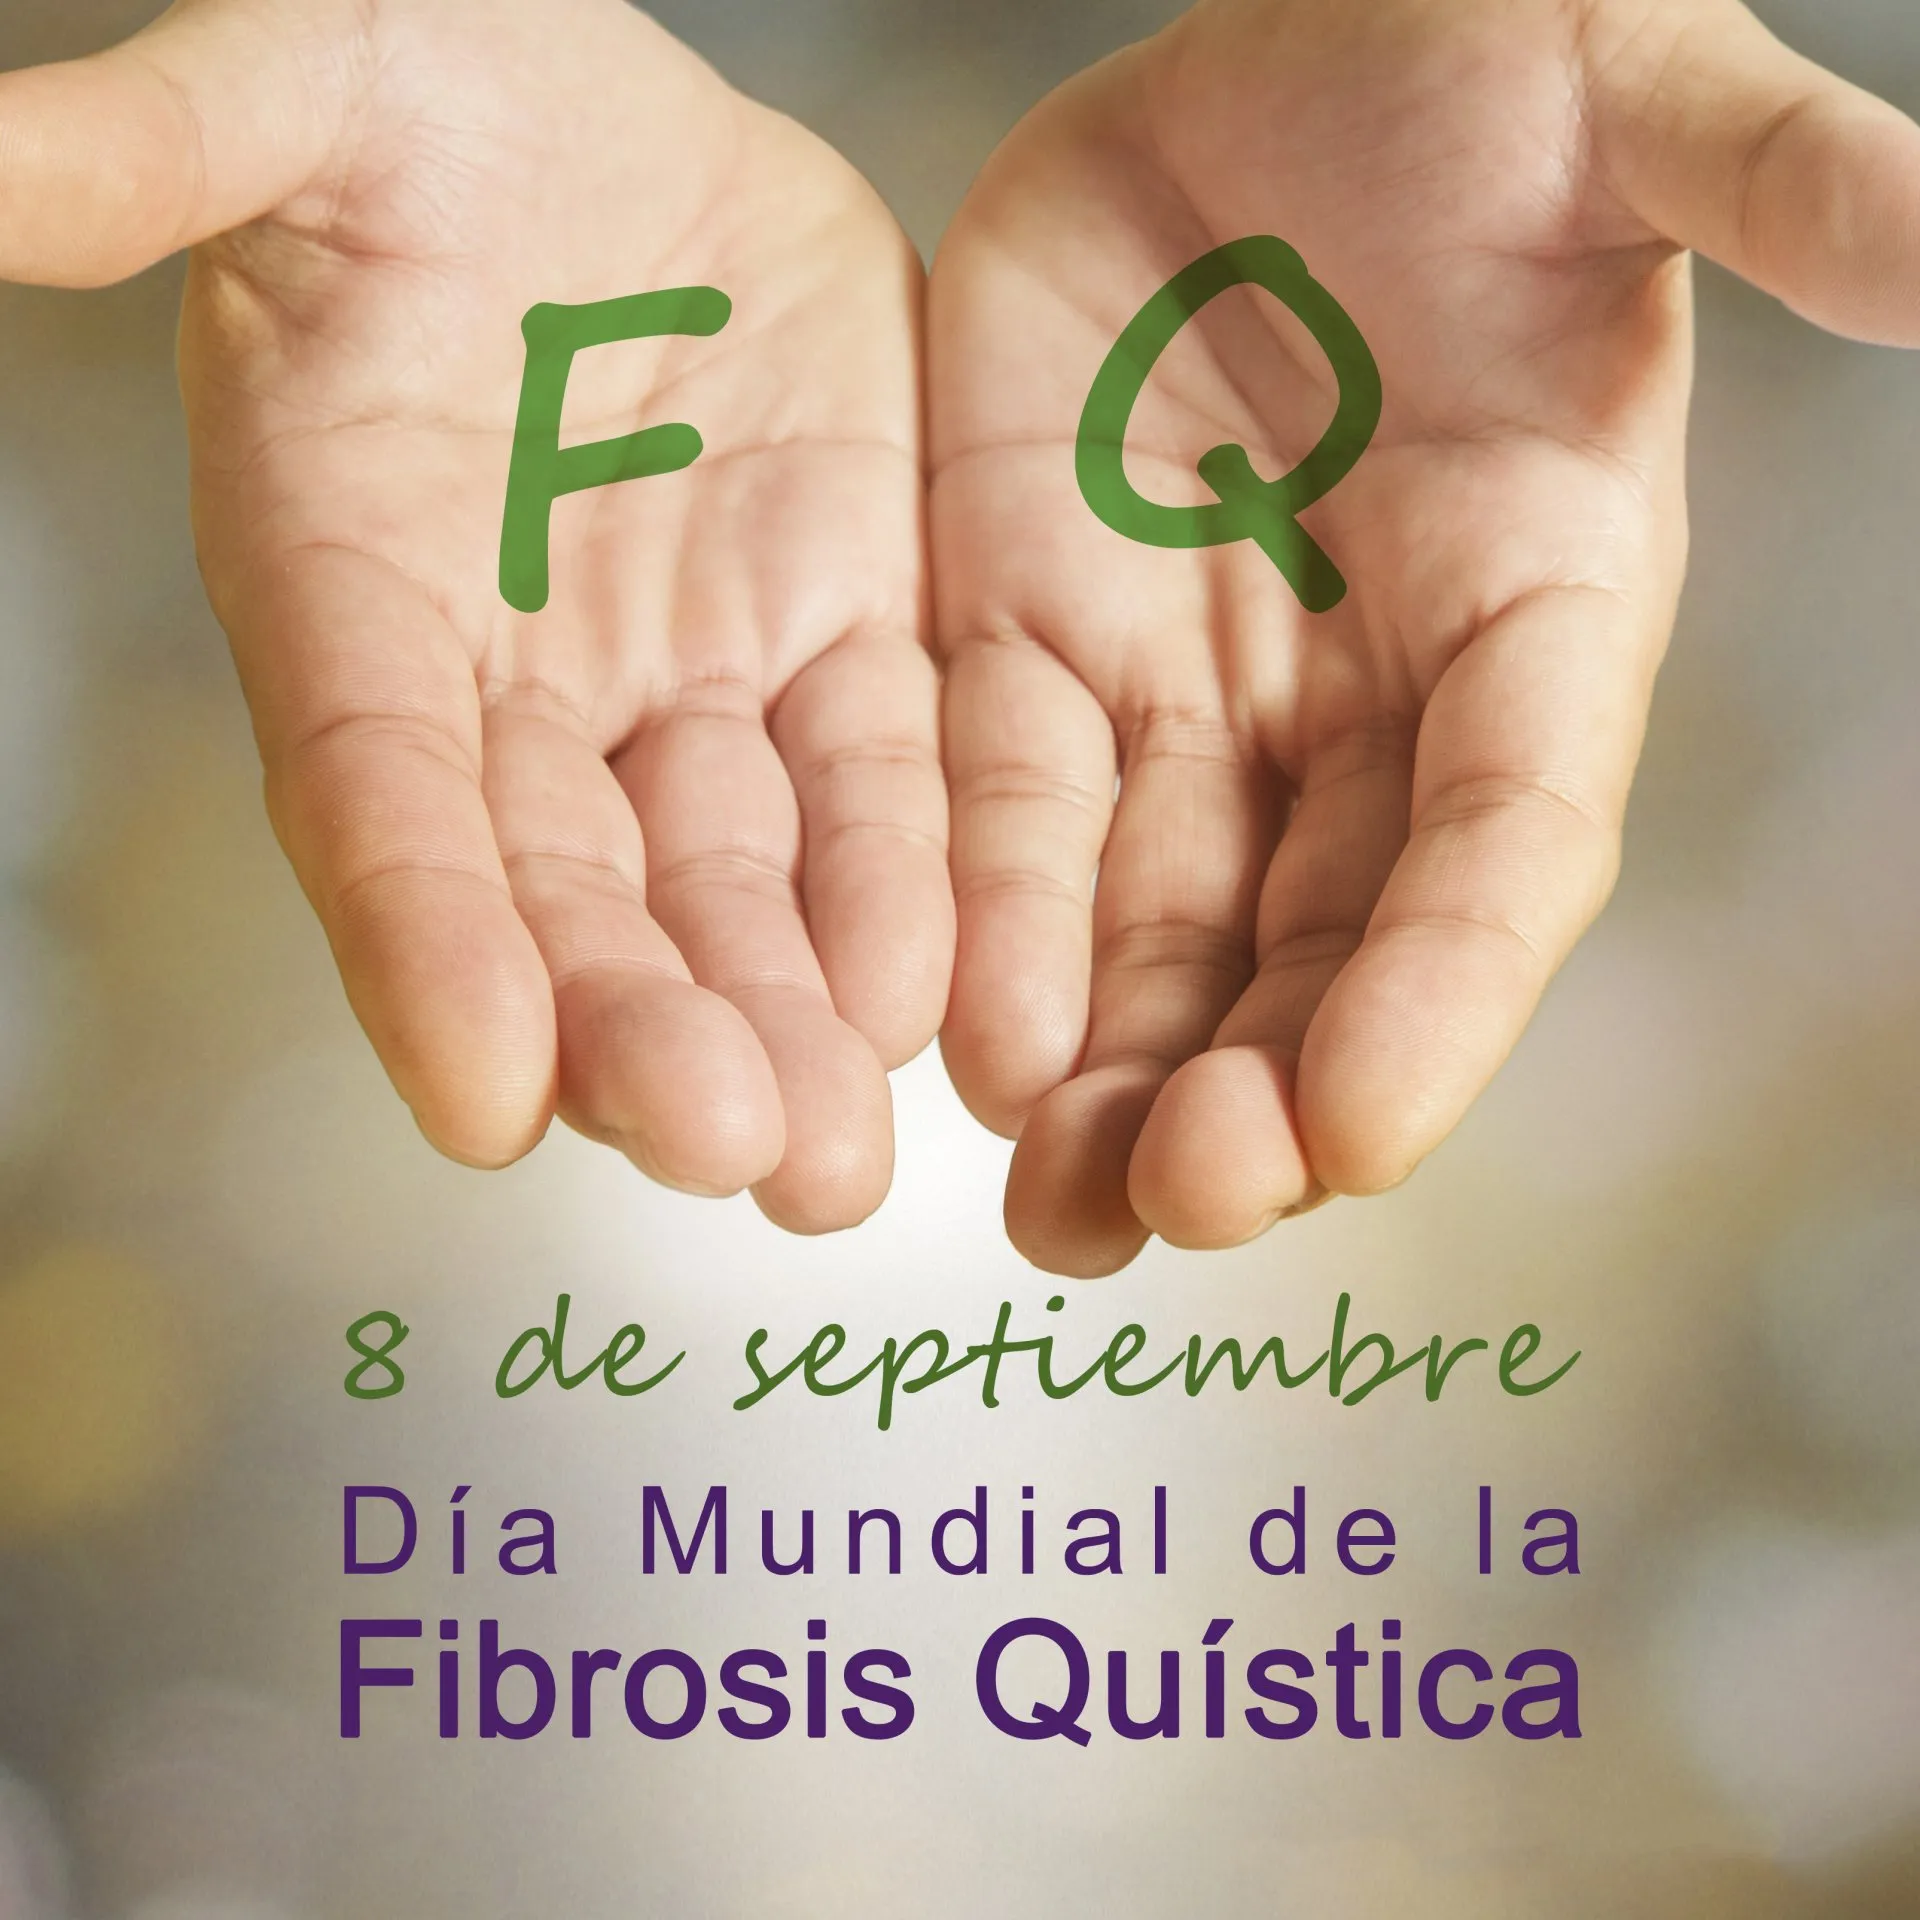 DÍA MUNDIAL DE LA FIBROSIS QUÍSTICA (8 de septiembre de 2020)